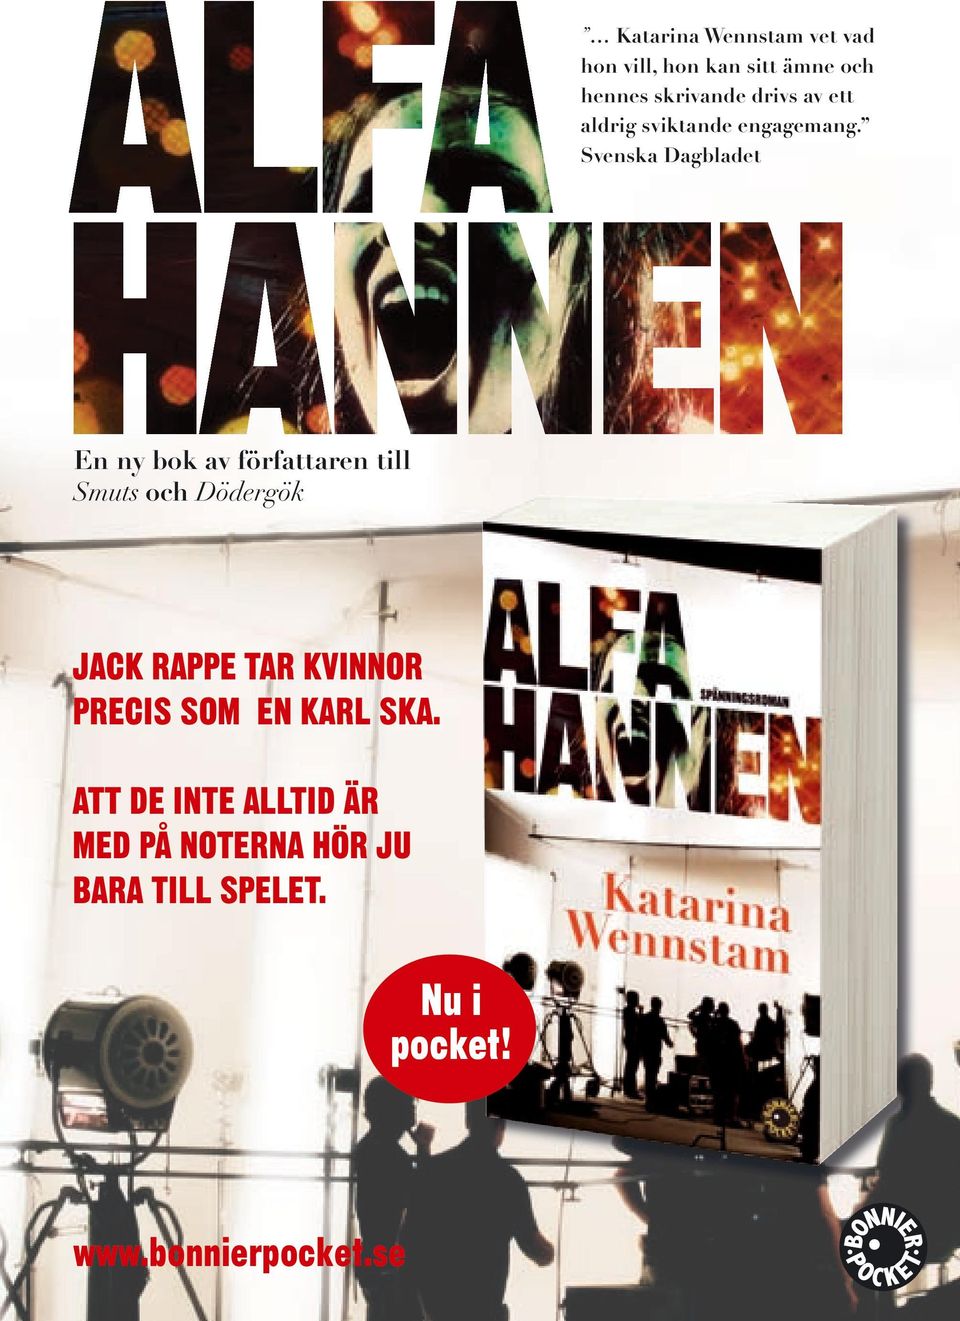 Svenska Dagbladet En ny bok av författaren till Smuts och Dödergök JACK RAPPE TAR